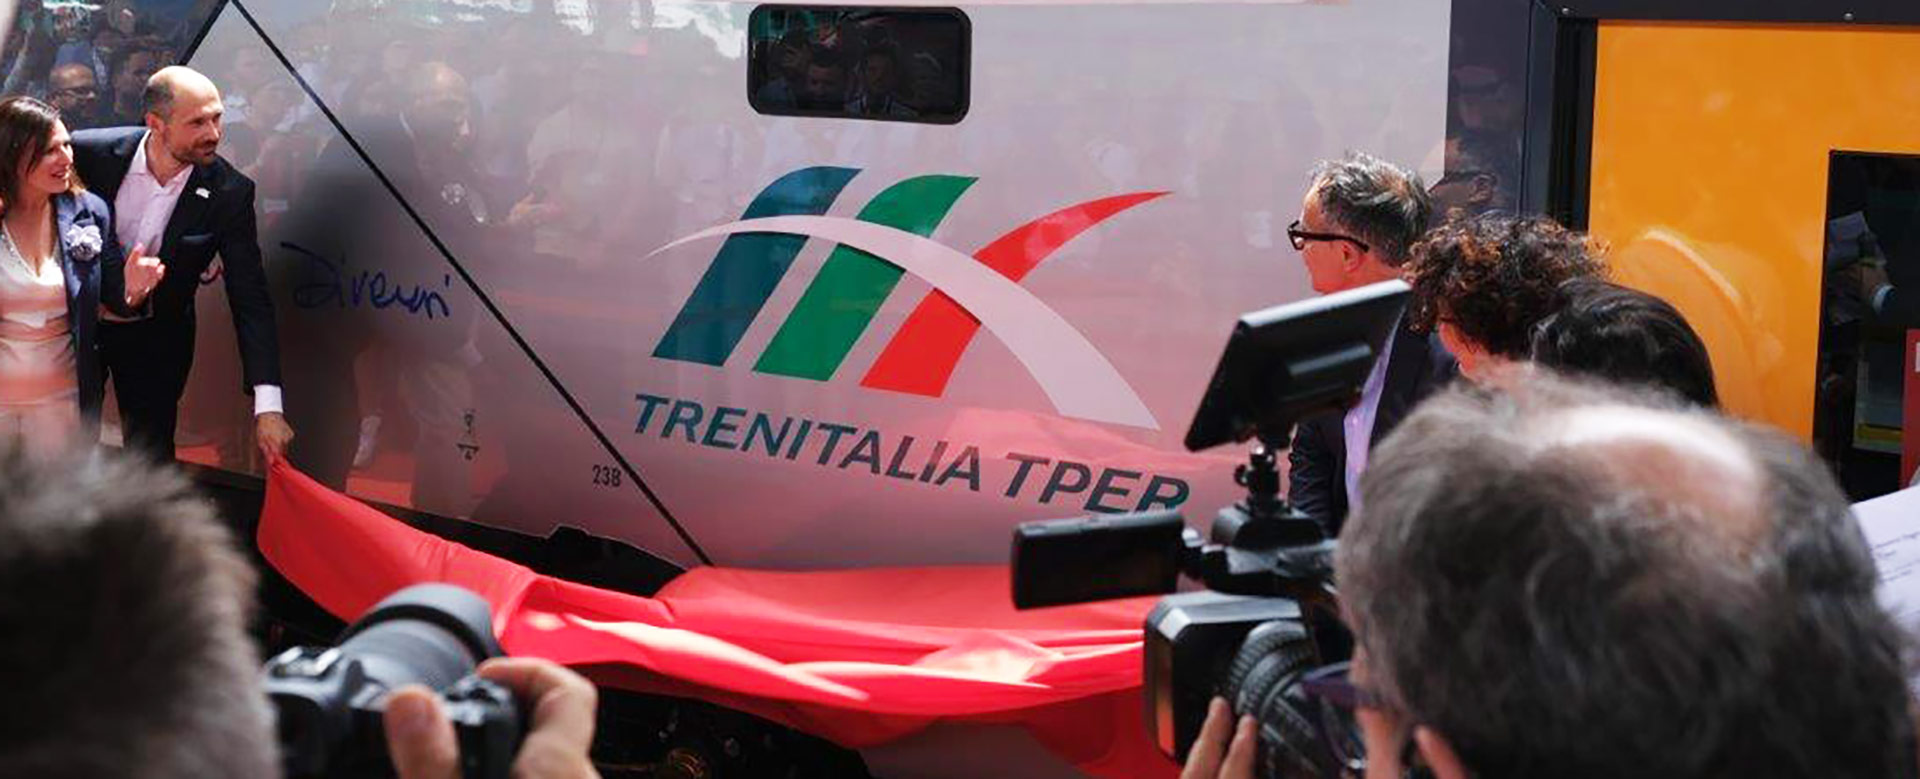 Svelamento nuovo logo Trenitalia TPer